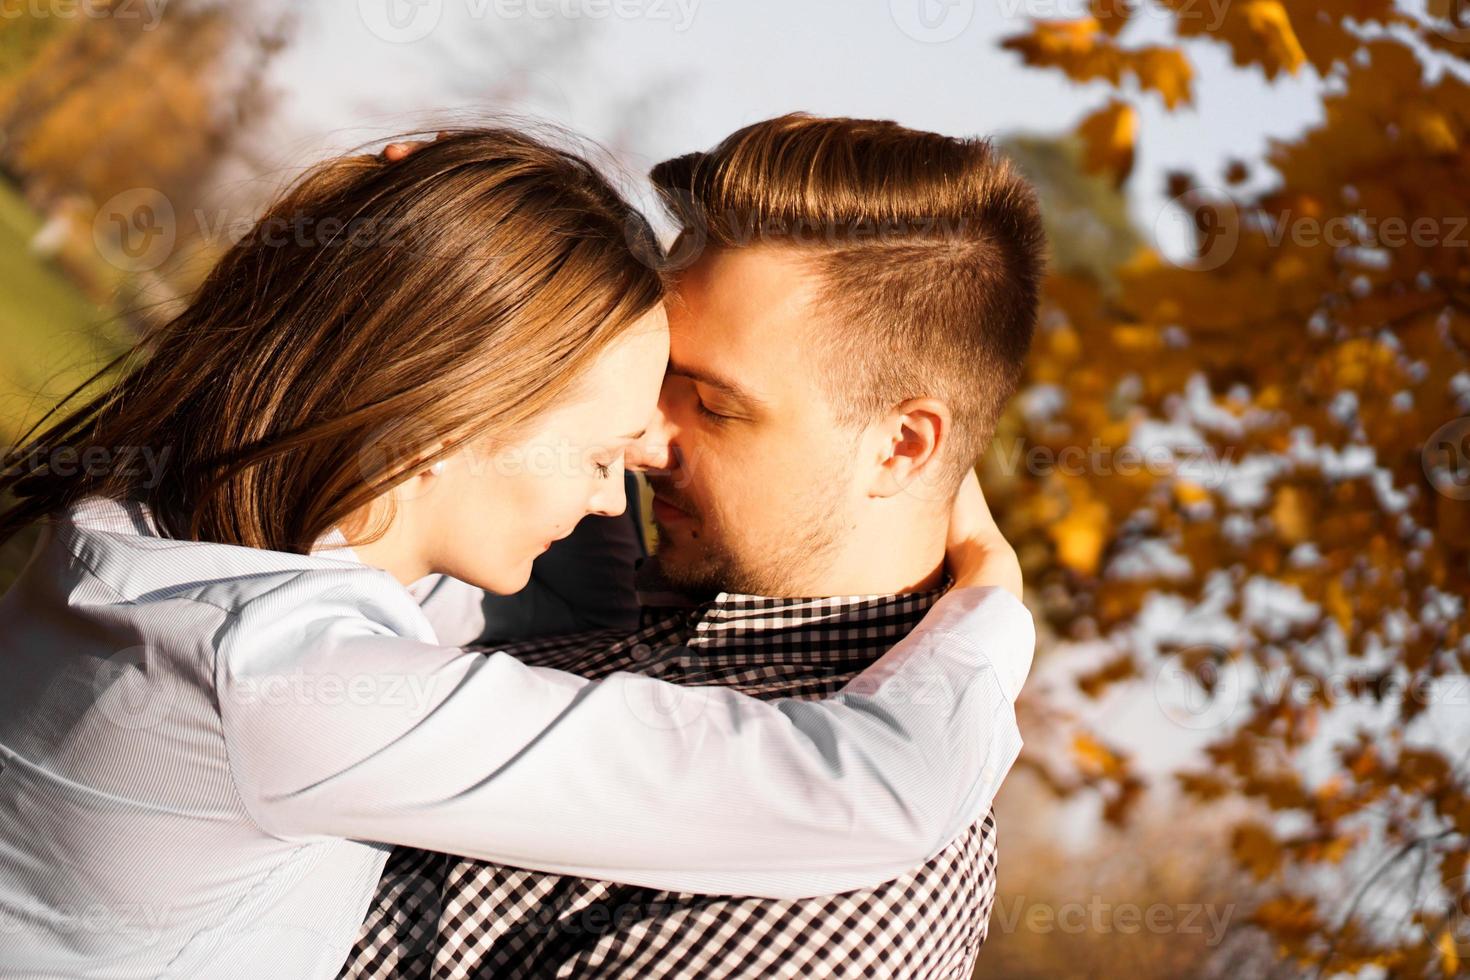 coppia romantica nel parco autunnale - concetto di amore, relazione e appuntamenti foto